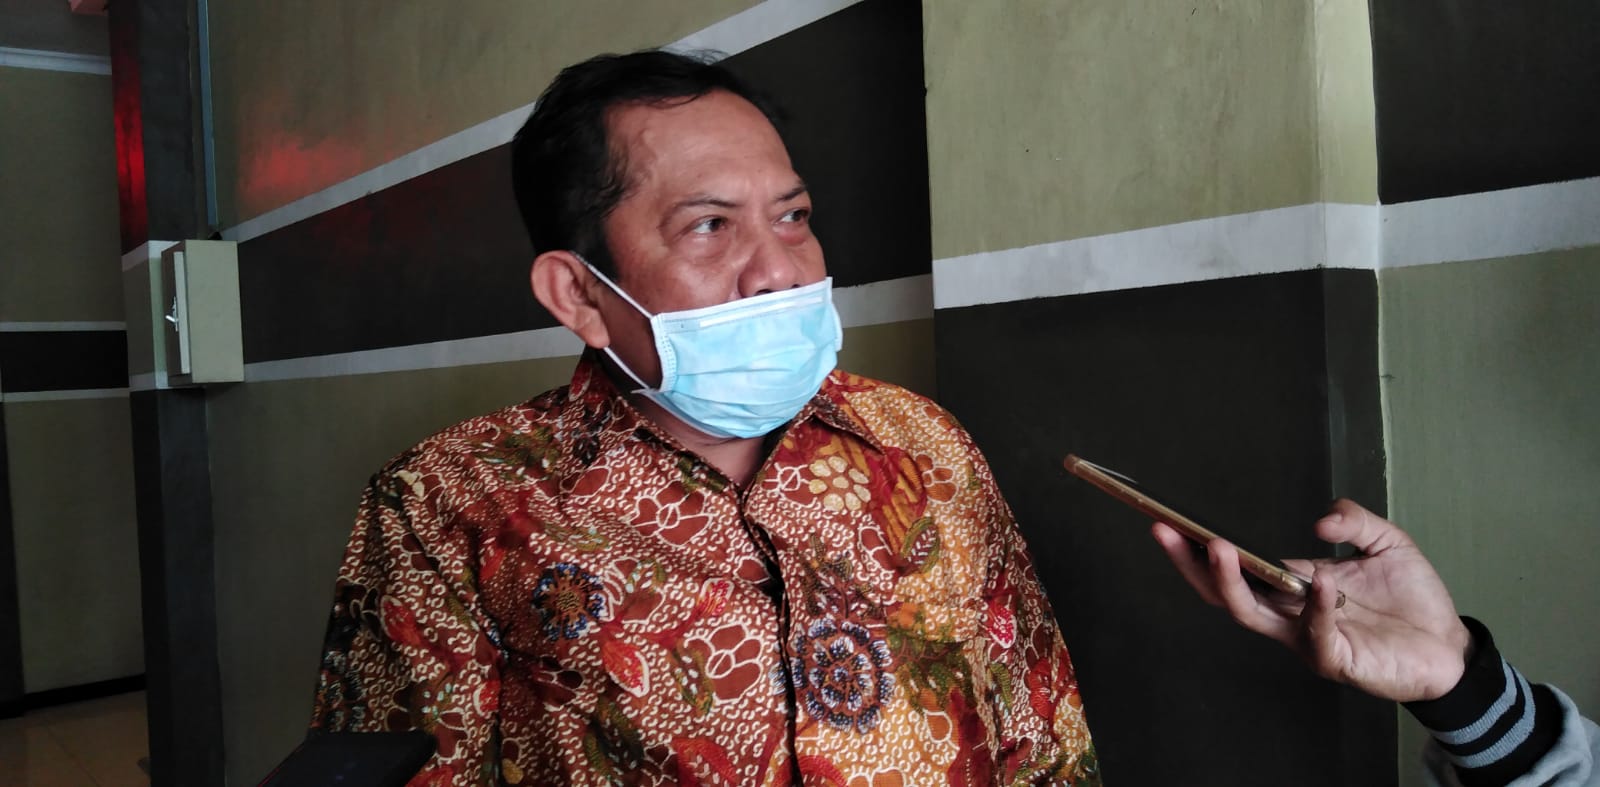 Anggota Dewan Perwakilan Rakyat Daerah (DPRD) Kabupaten Pati, Nur Sukarno